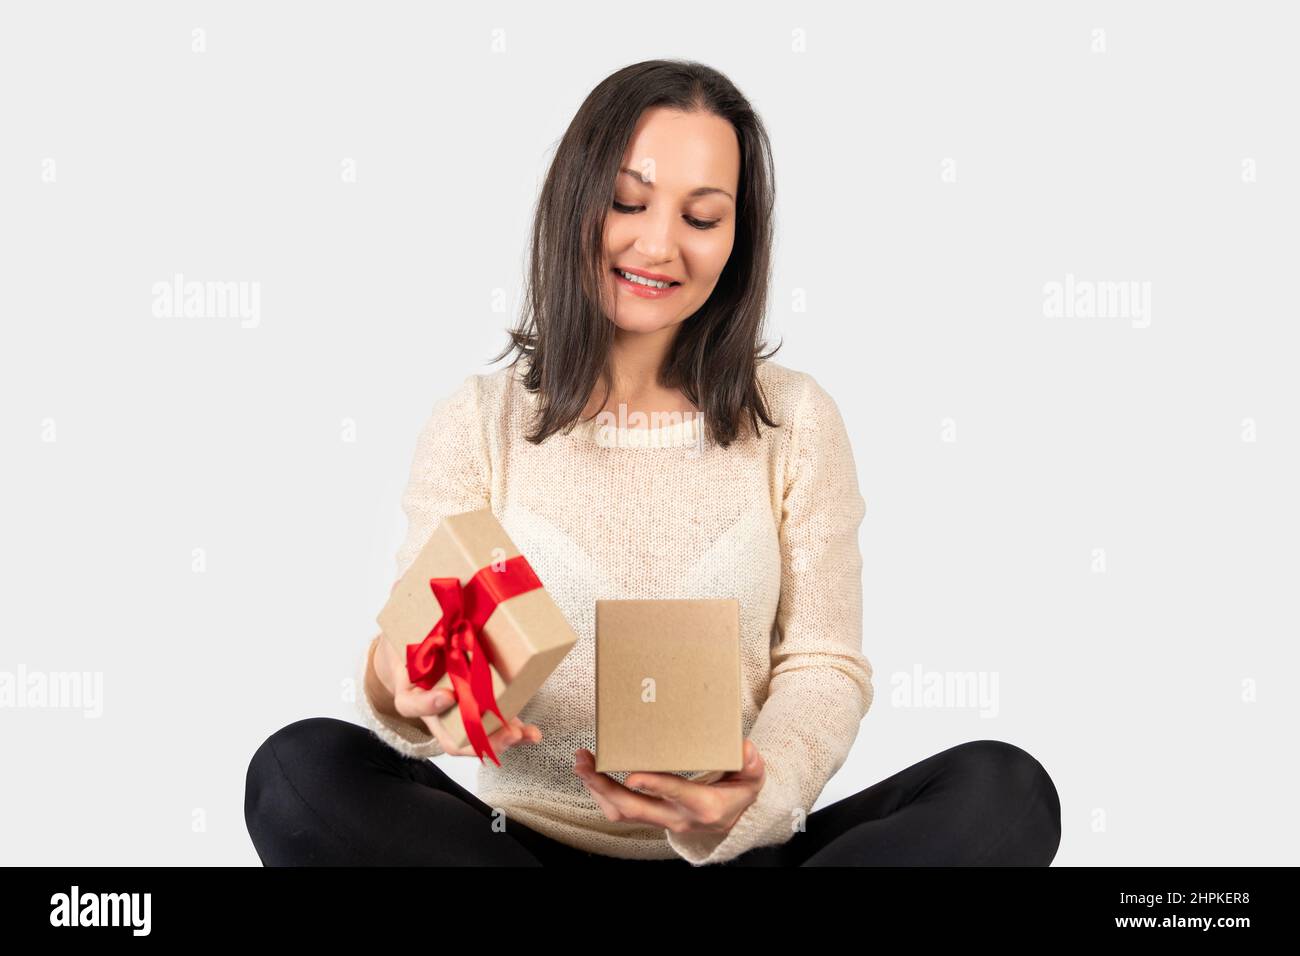 La giovane donna ha ricevuto una confezione regalo per un giorno speciale e la ha aperta con un volto felice. Foto di alta qualità Foto Stock